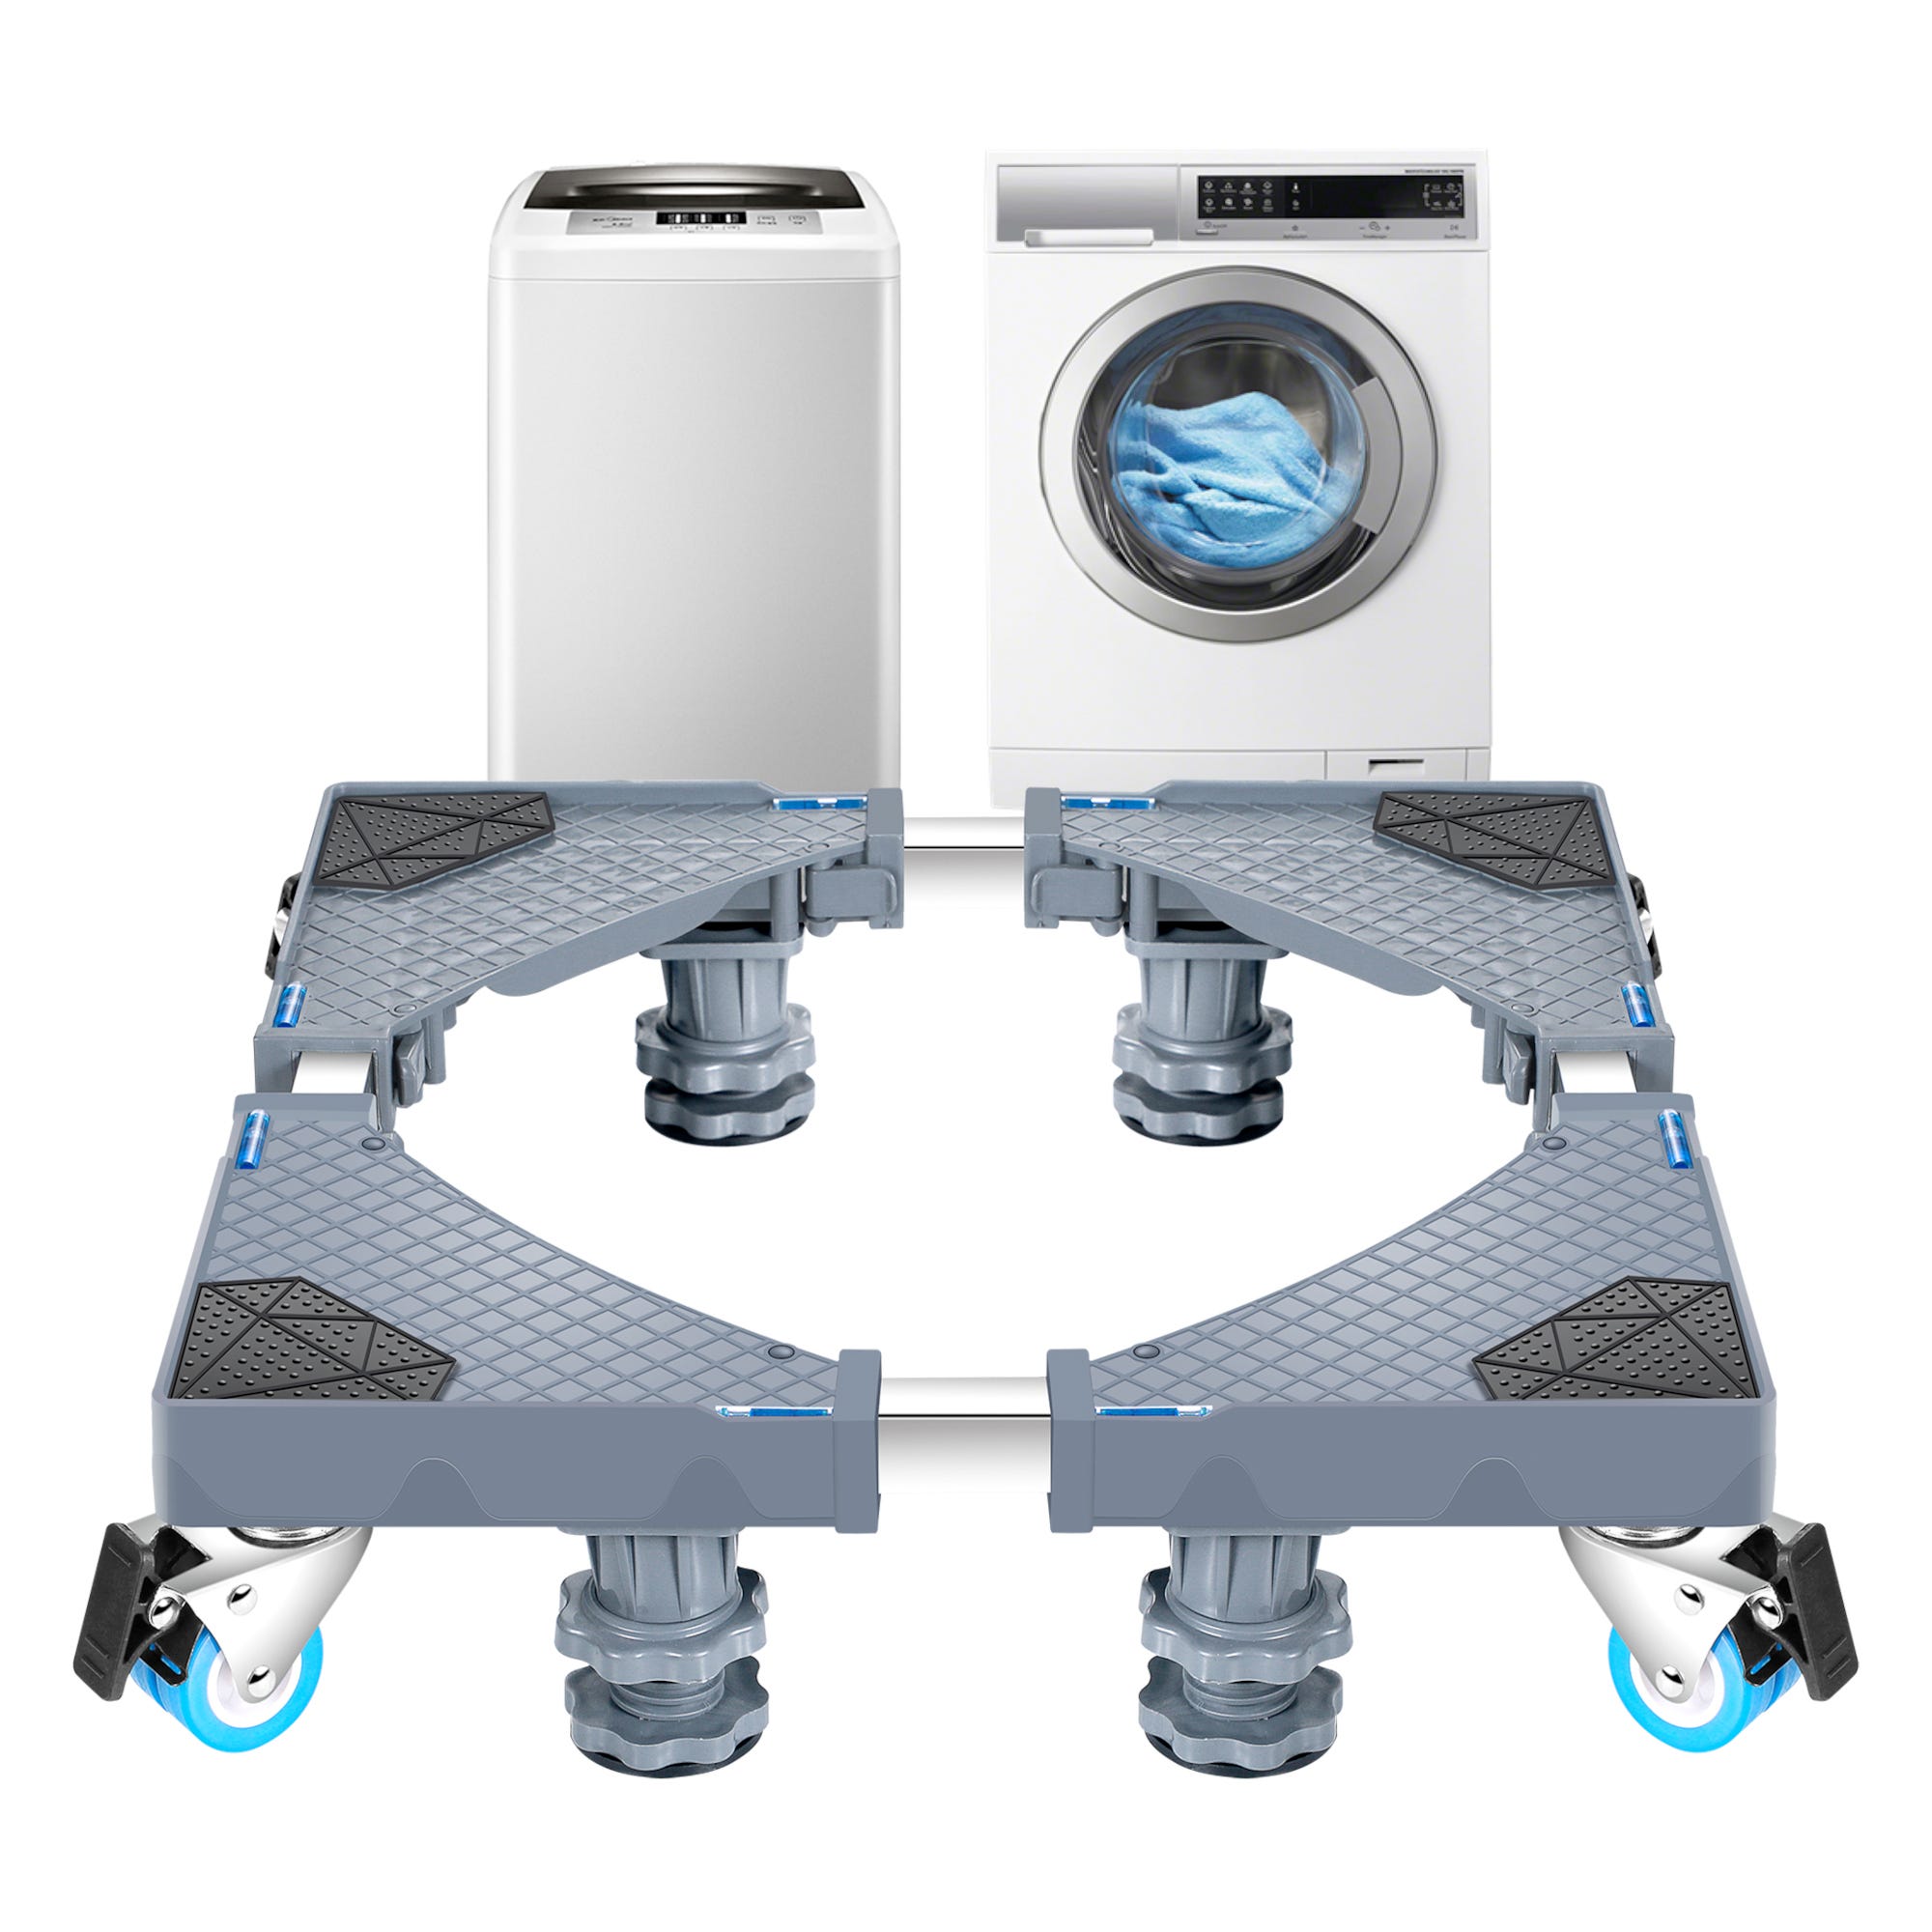 Base de pedestal para lavadora, rueda universal de 360 grados, carga máxima  de 660 libras (661.4 lbs), pedestal de lavadora, para lavadora